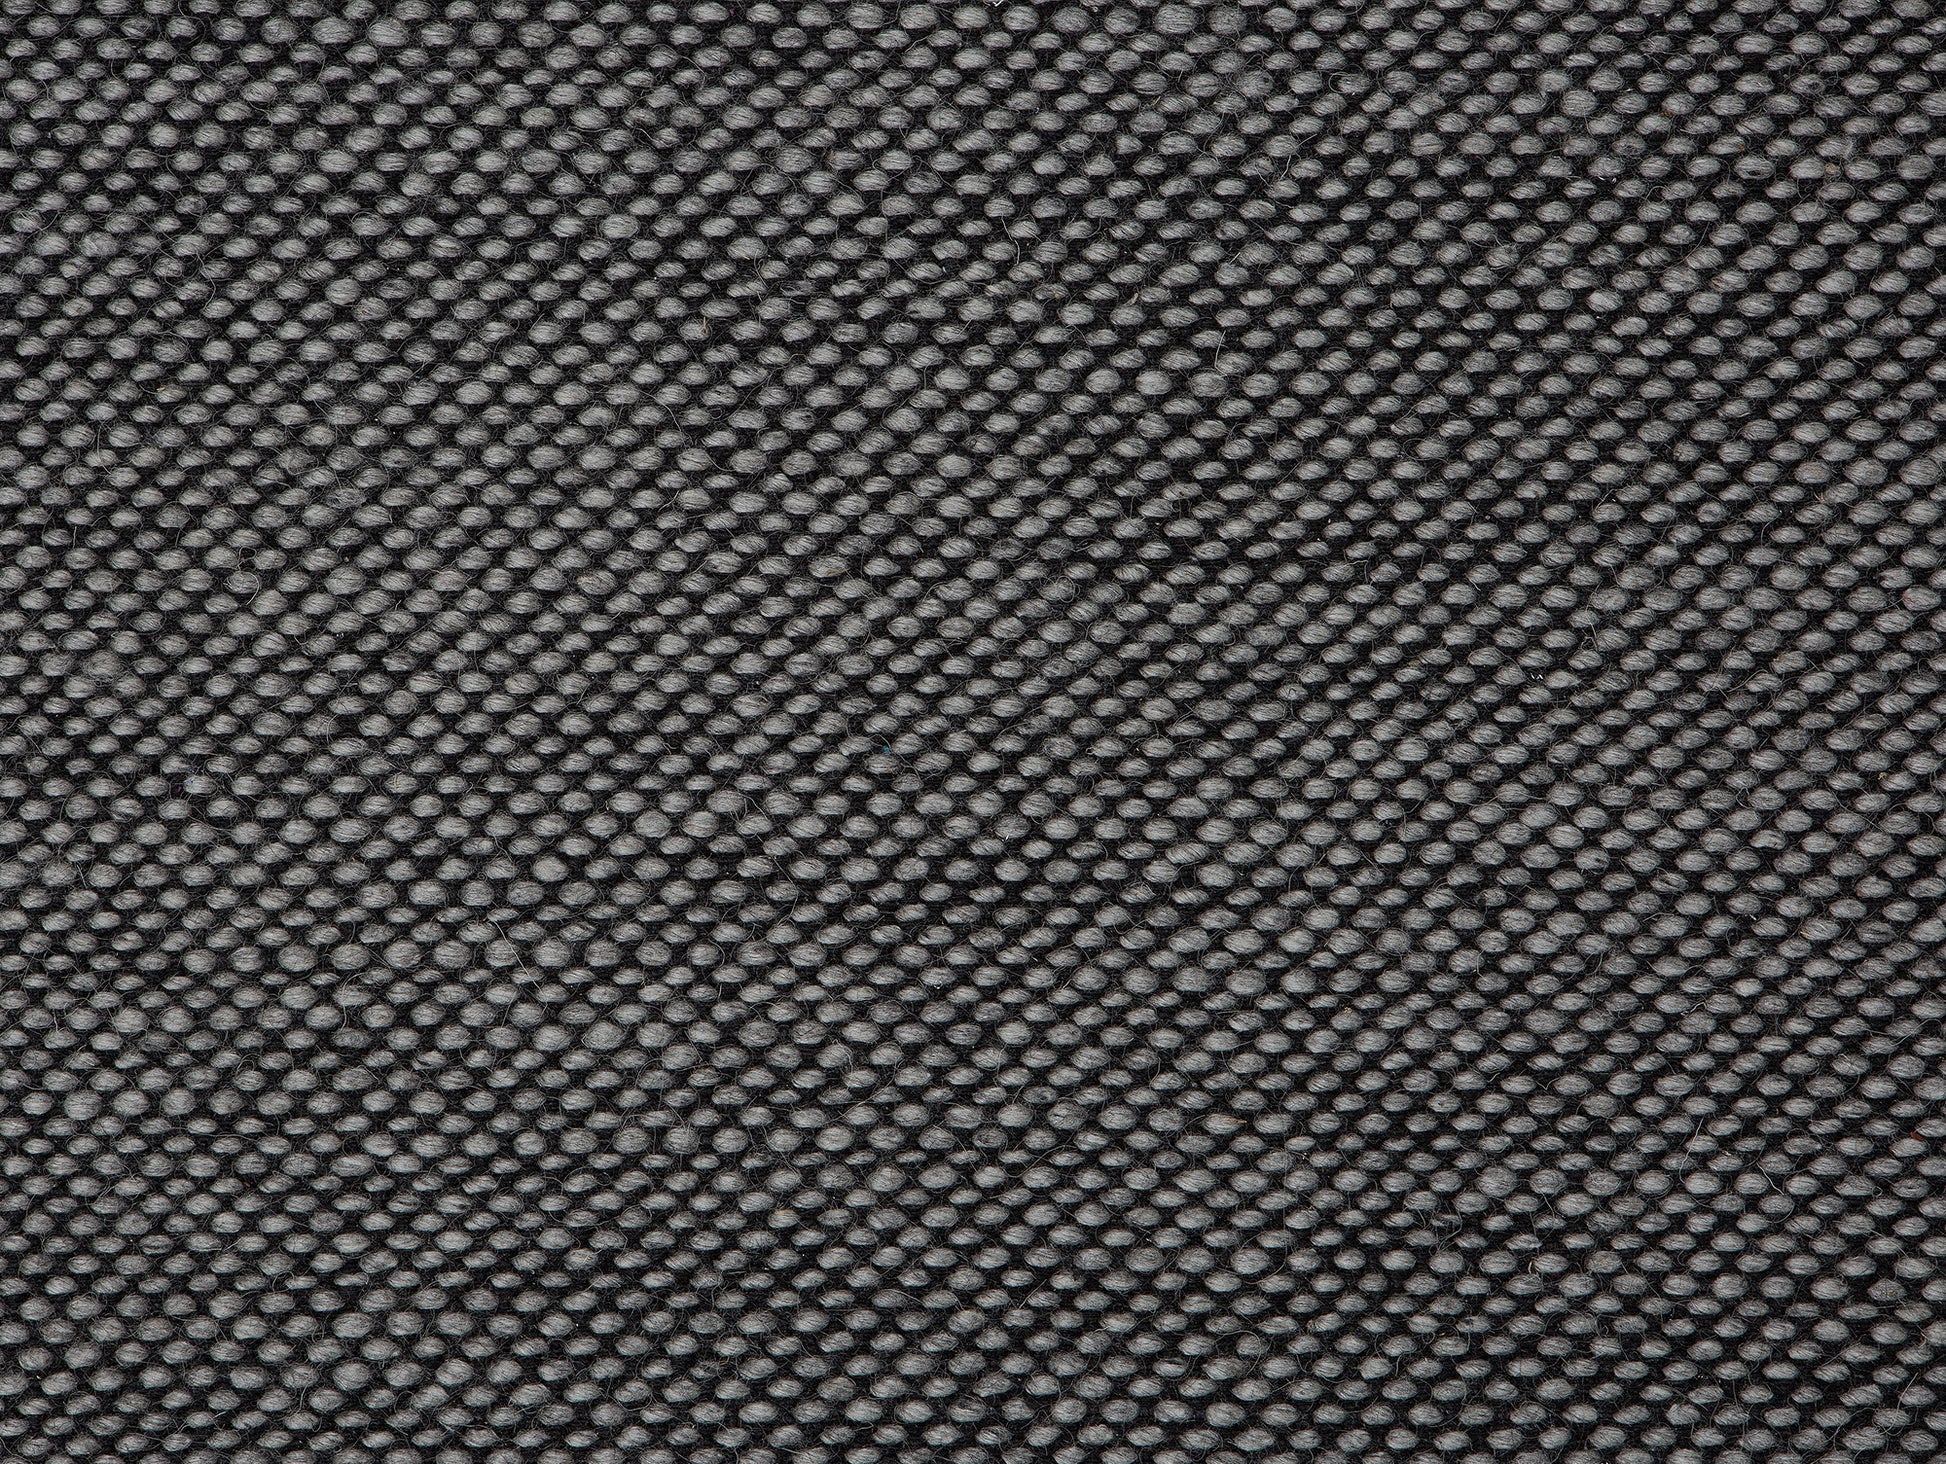 Rolf Rug by Fabula Living - 1615 Grey / Black